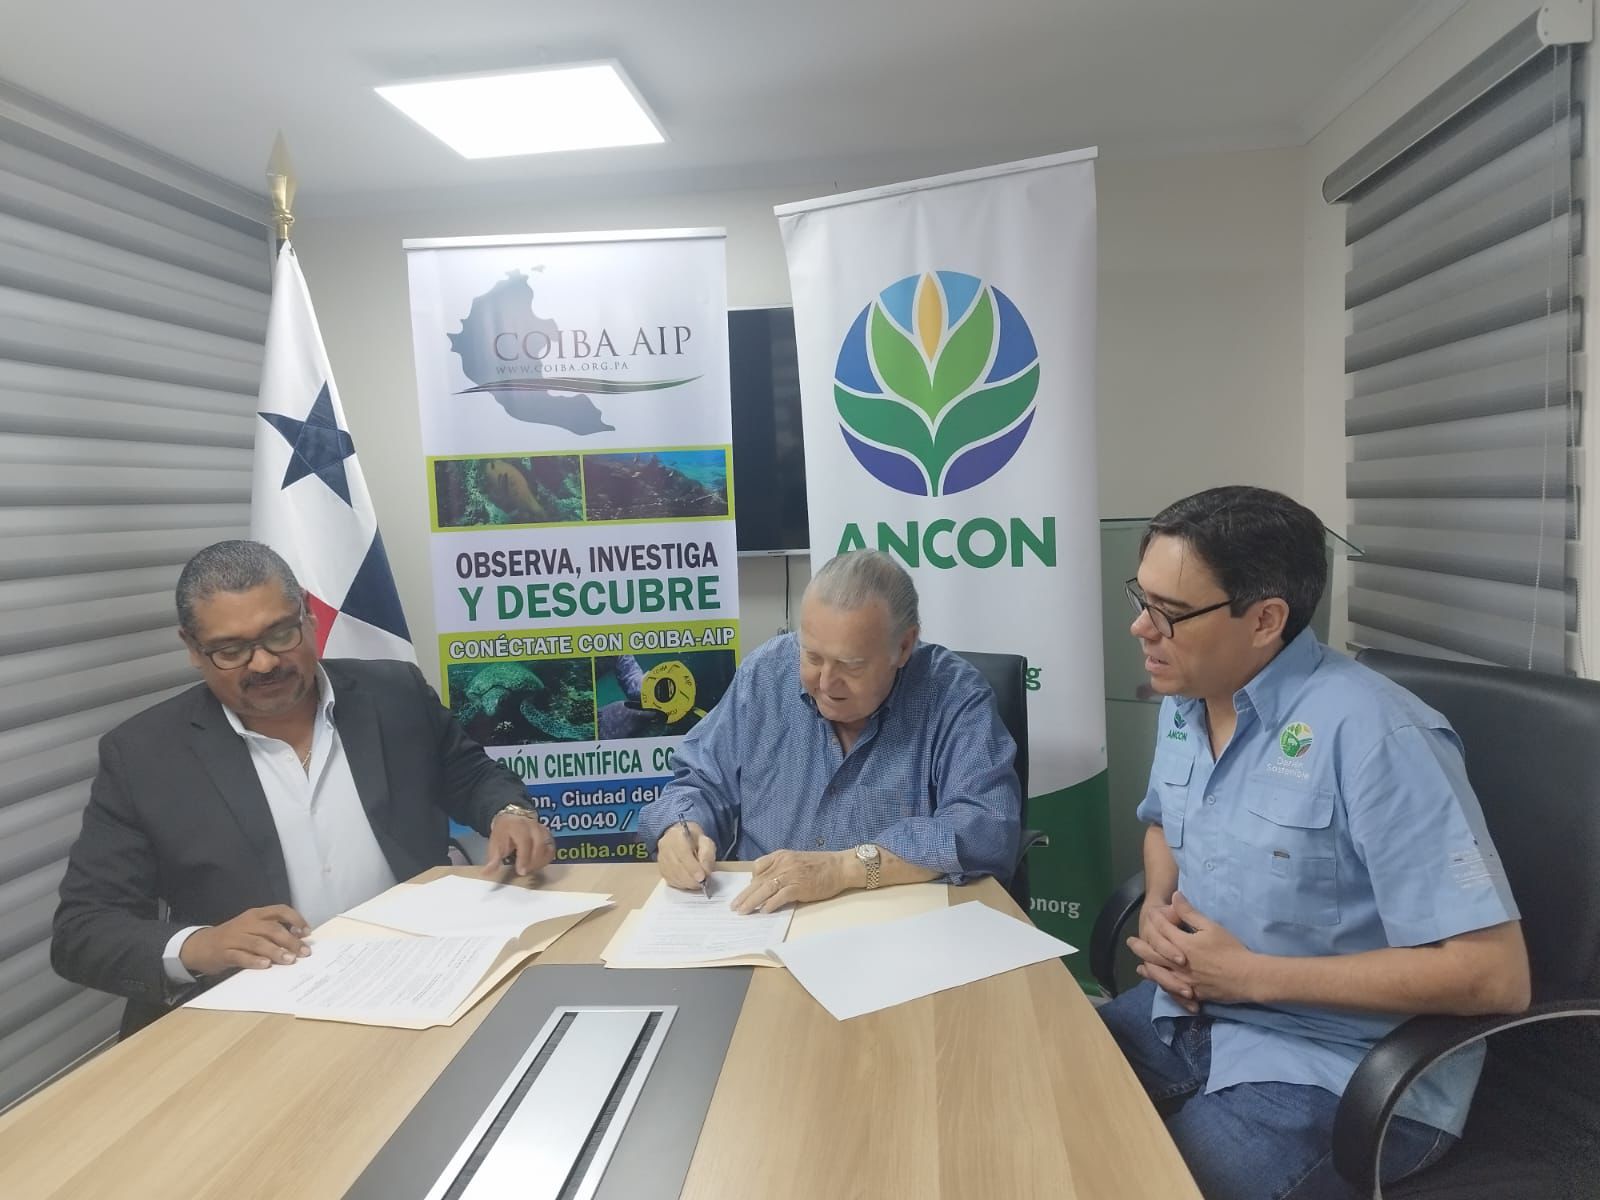 Coiba AIP y ANCÓN firman acuerdo para intercambio de información científica en dos parques nacionales